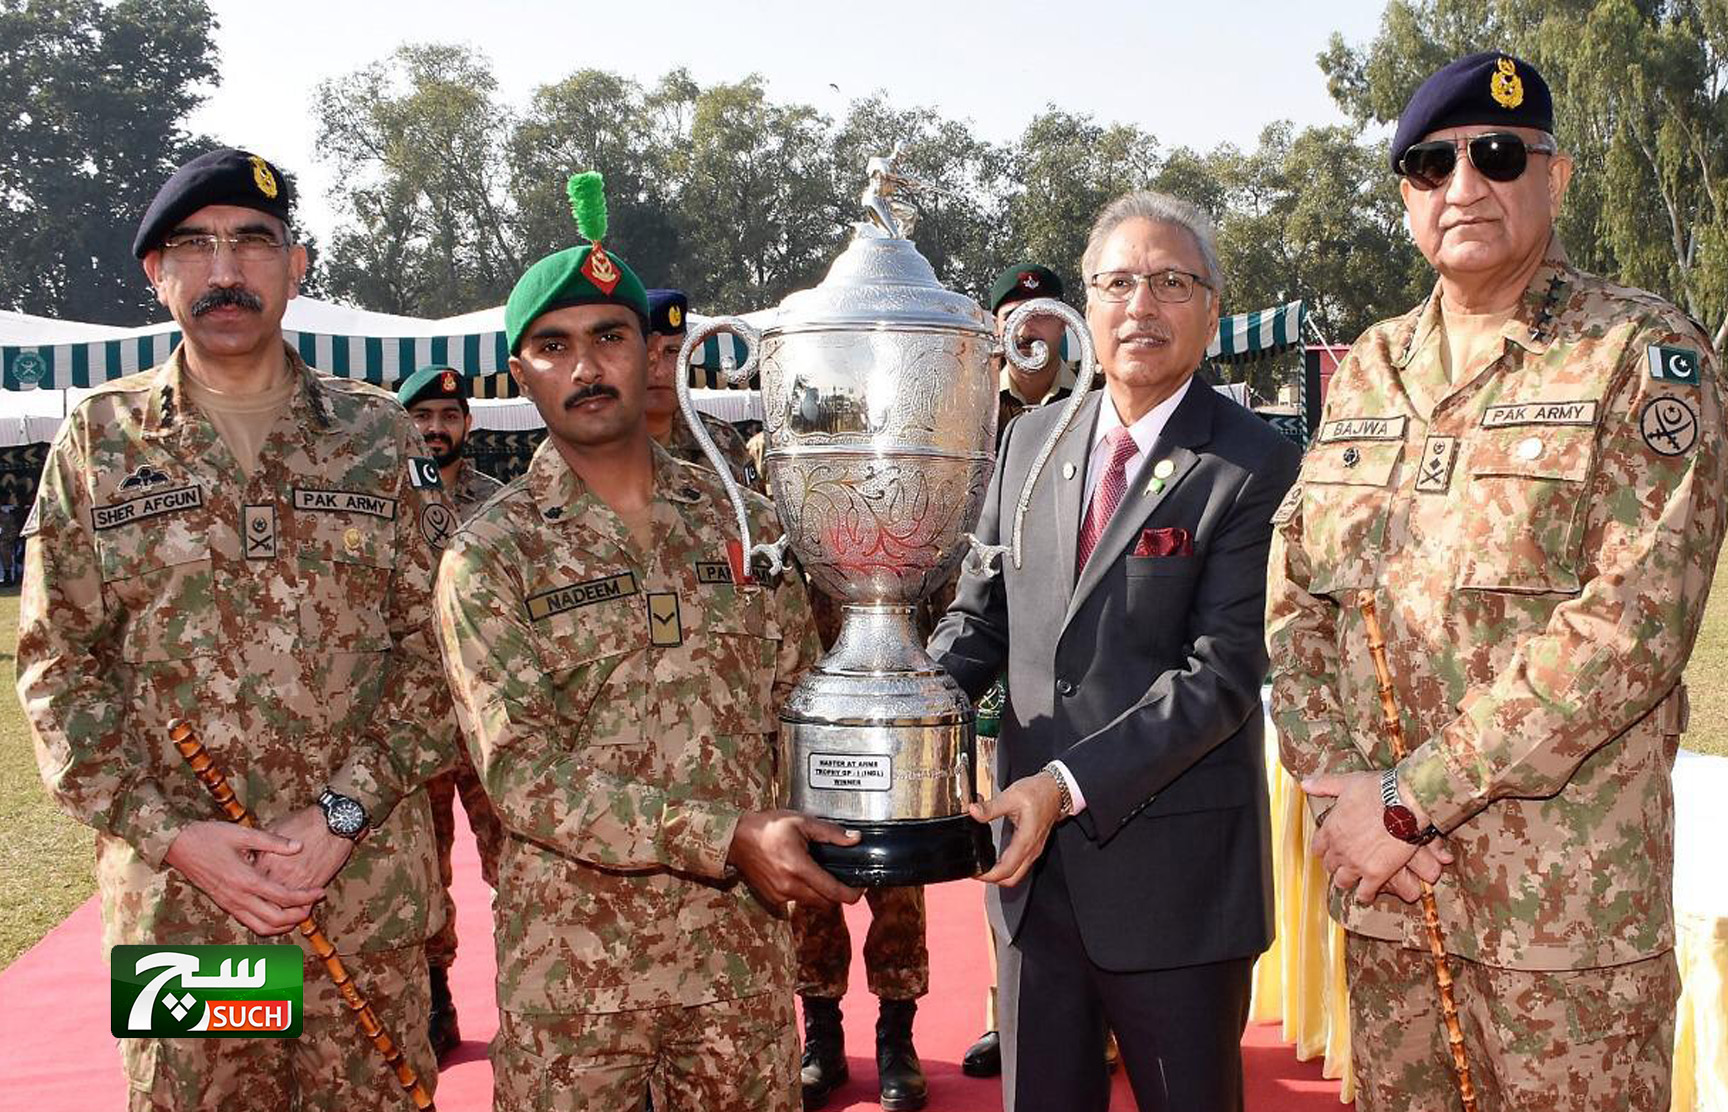 الرئيس الباكستاني يشرف على مسابقة لإطلاق النار